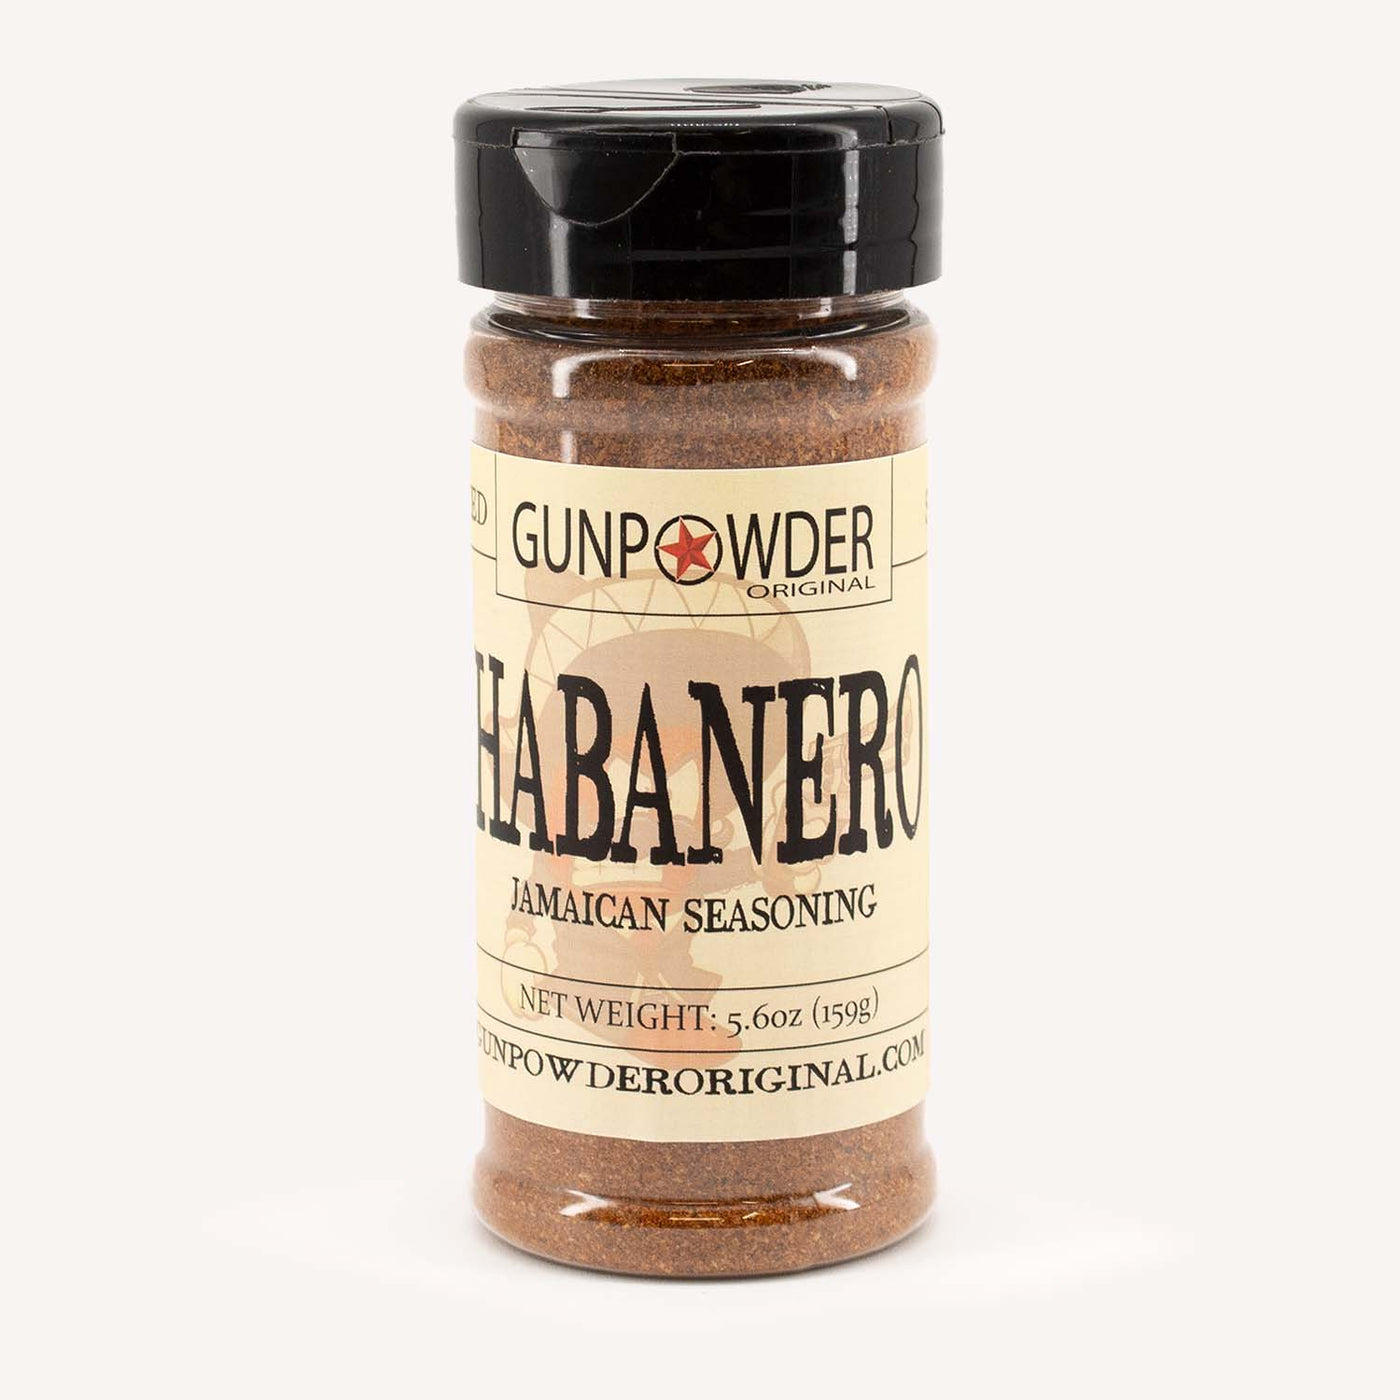 Gunpowder Original Habanero Jamaican Seasoning